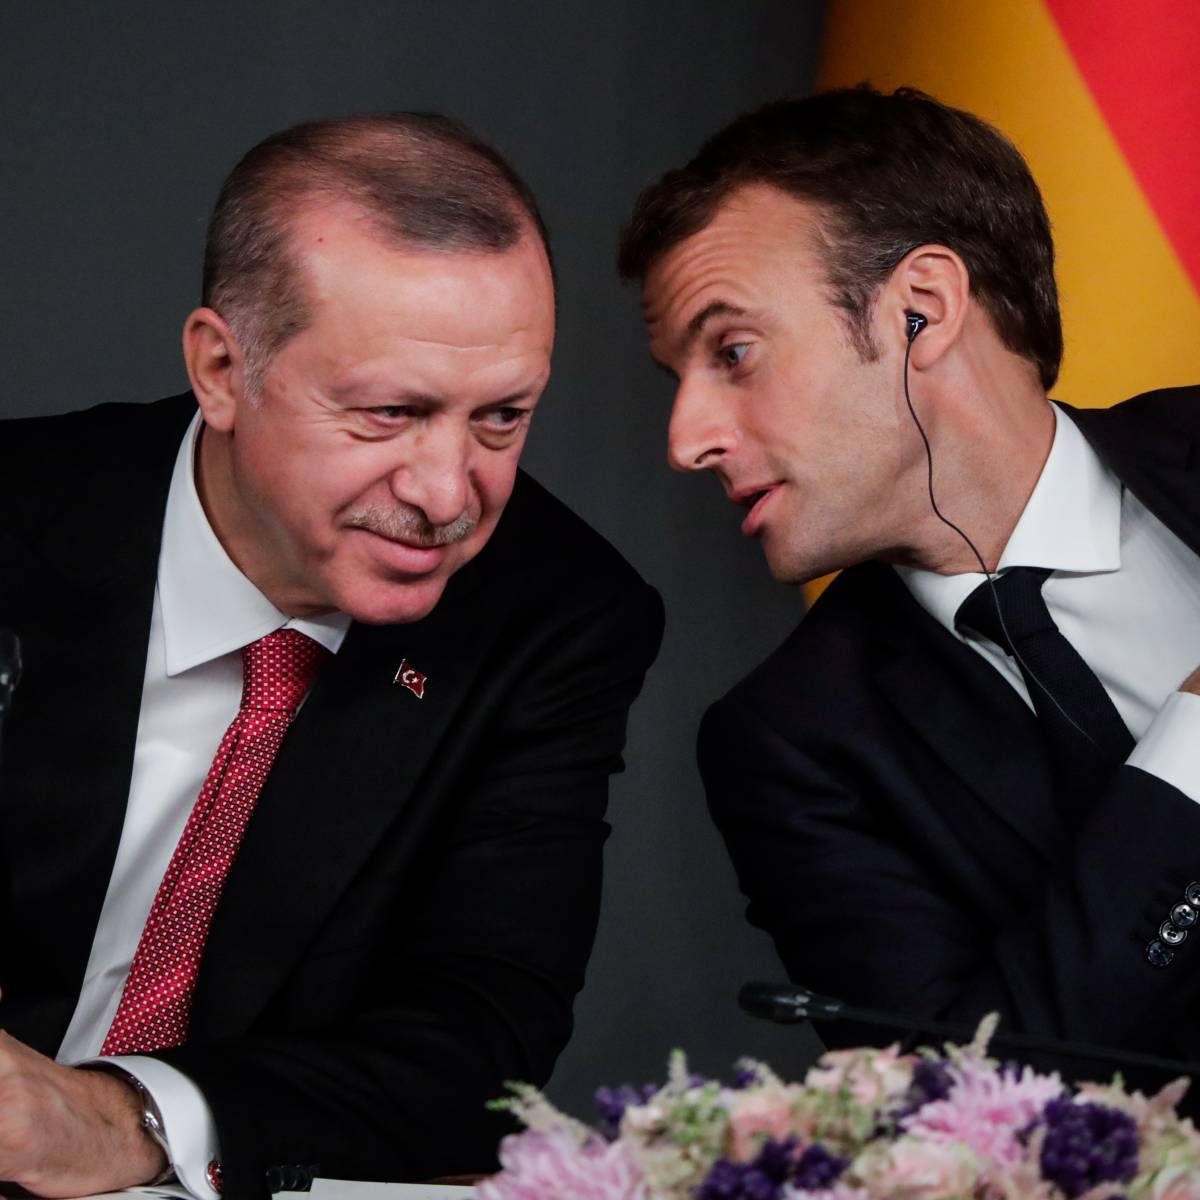 Париж и Анкара заключают перемирие?